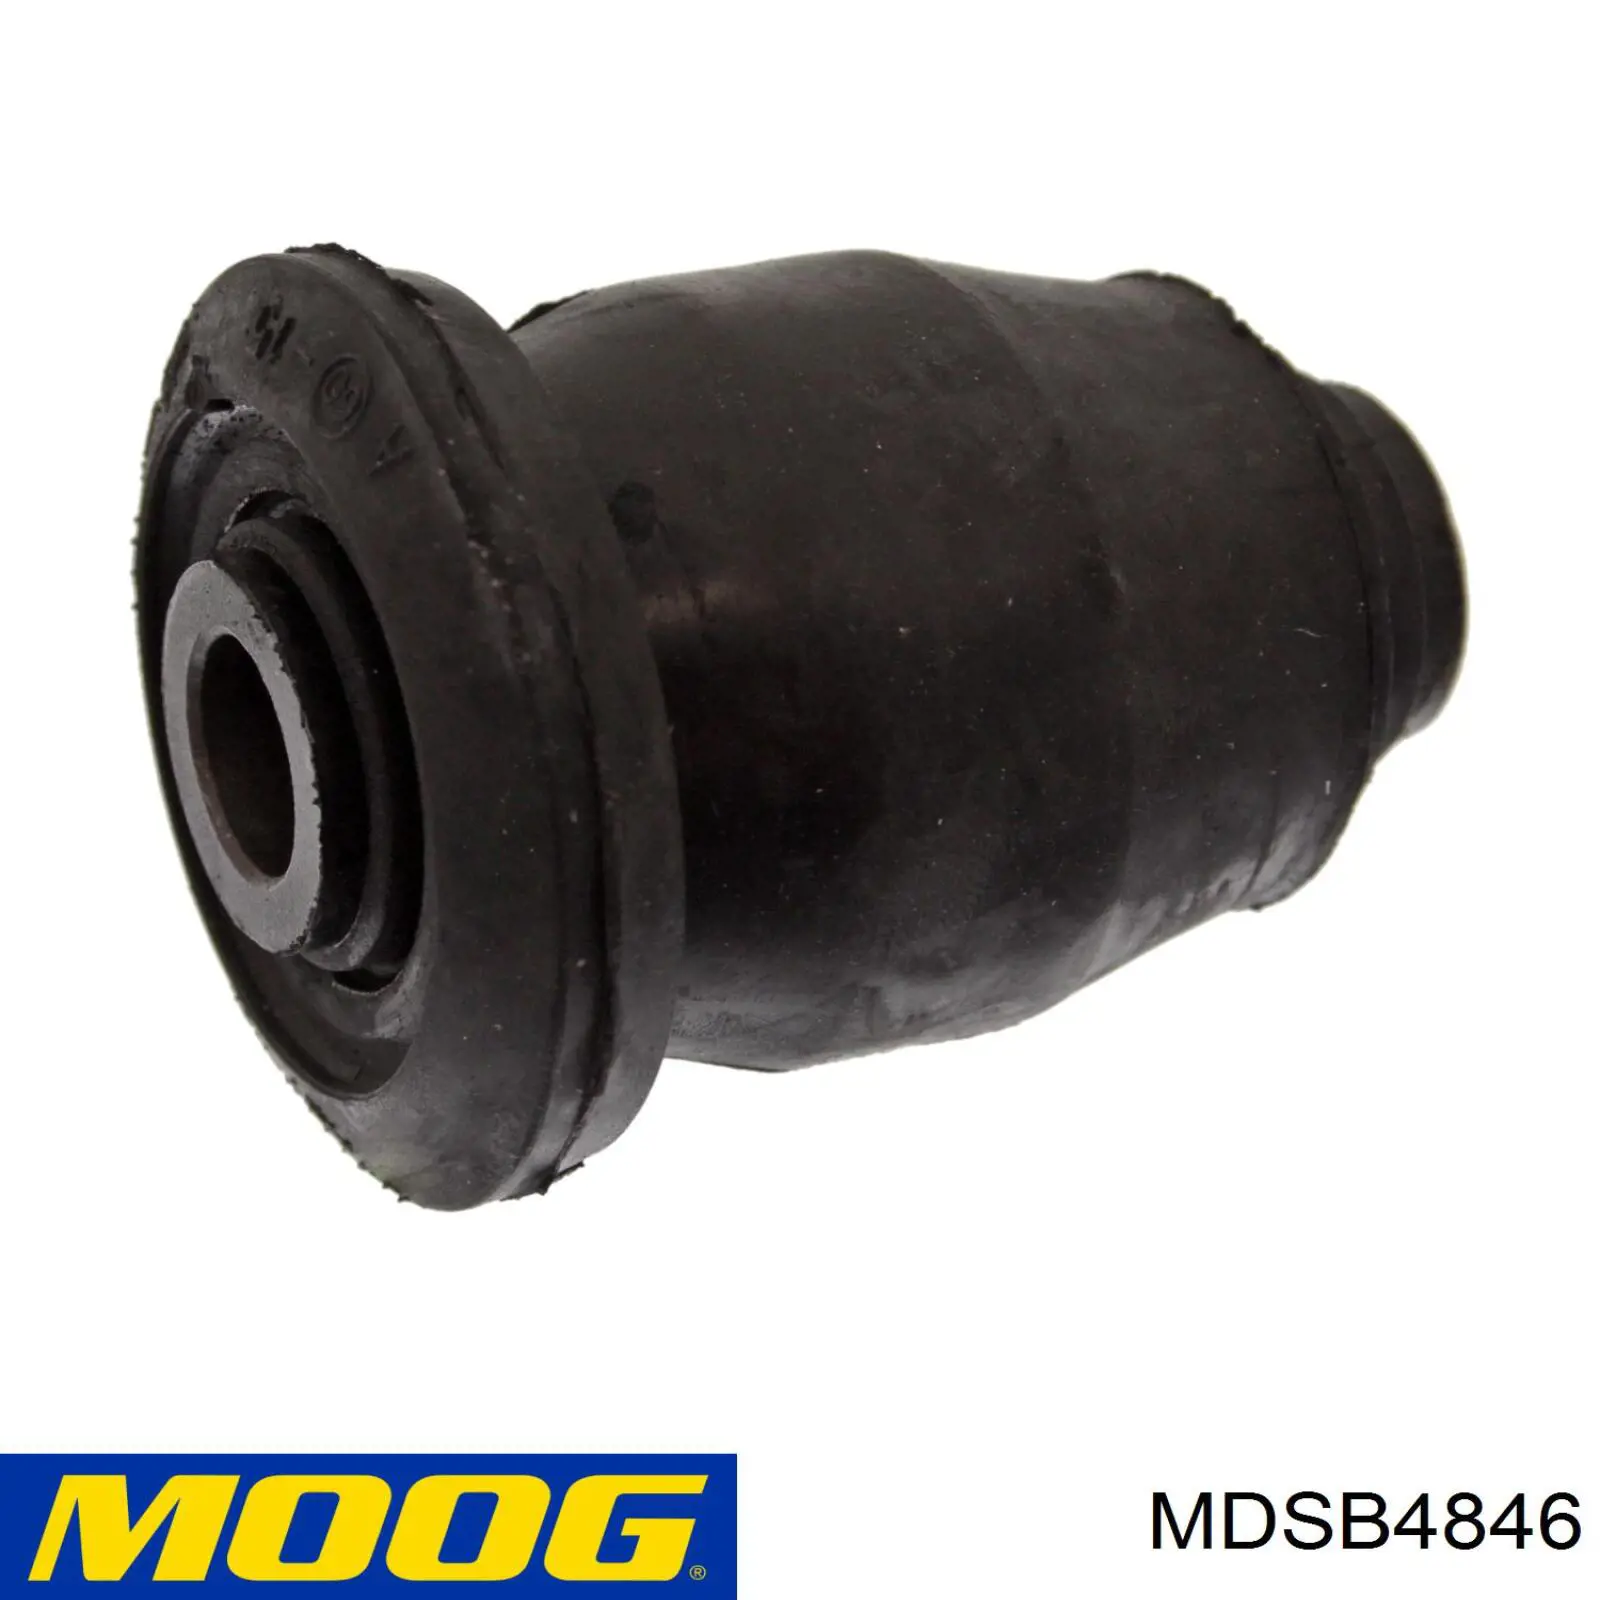 MDSB4846 Moog silentblock de suspensión delantero inferior